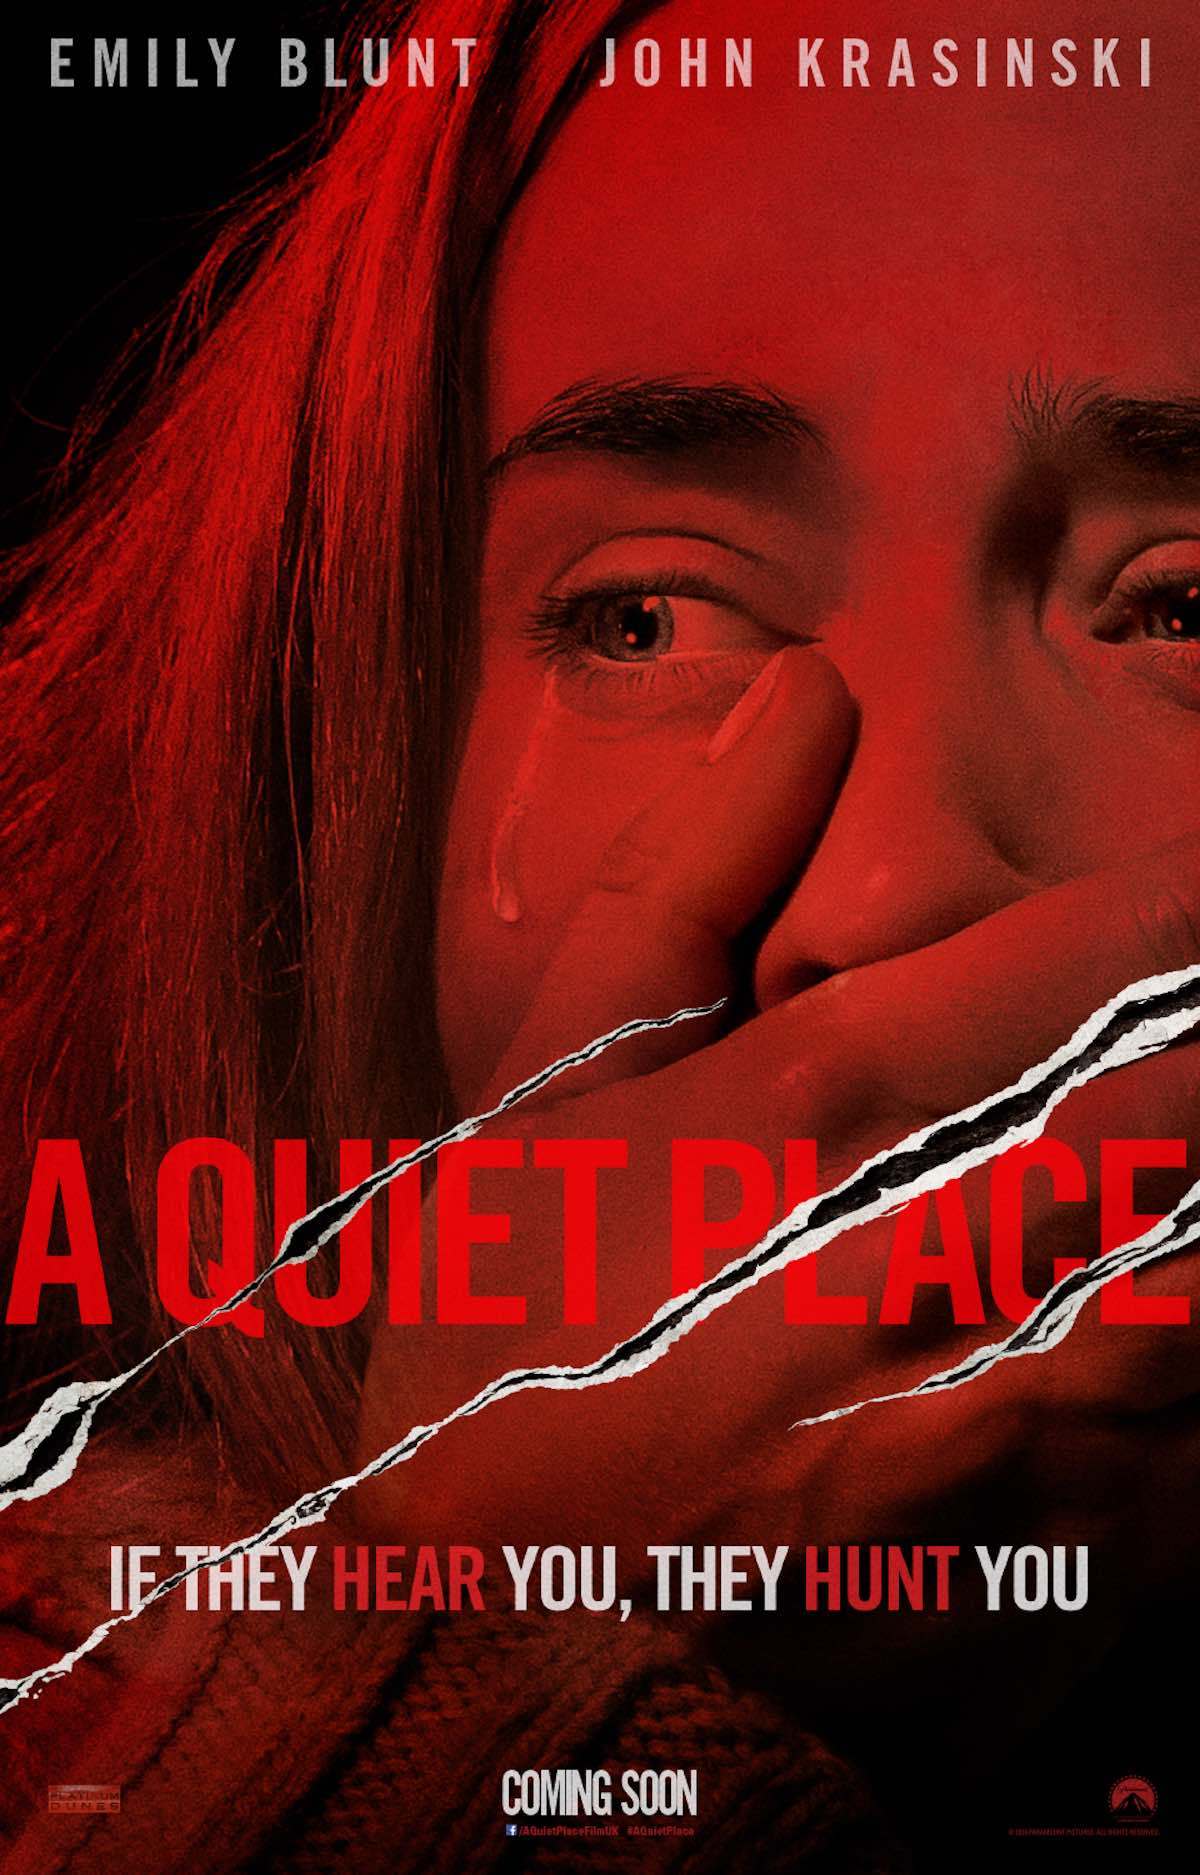 Poster do filme, que mostra a atriz Emily Blunt com olhar assustado, chorando, cobrindo a boca com as mãos. O Título do filme está arranhado por 3 garras, como se tivesse cortado o papel.